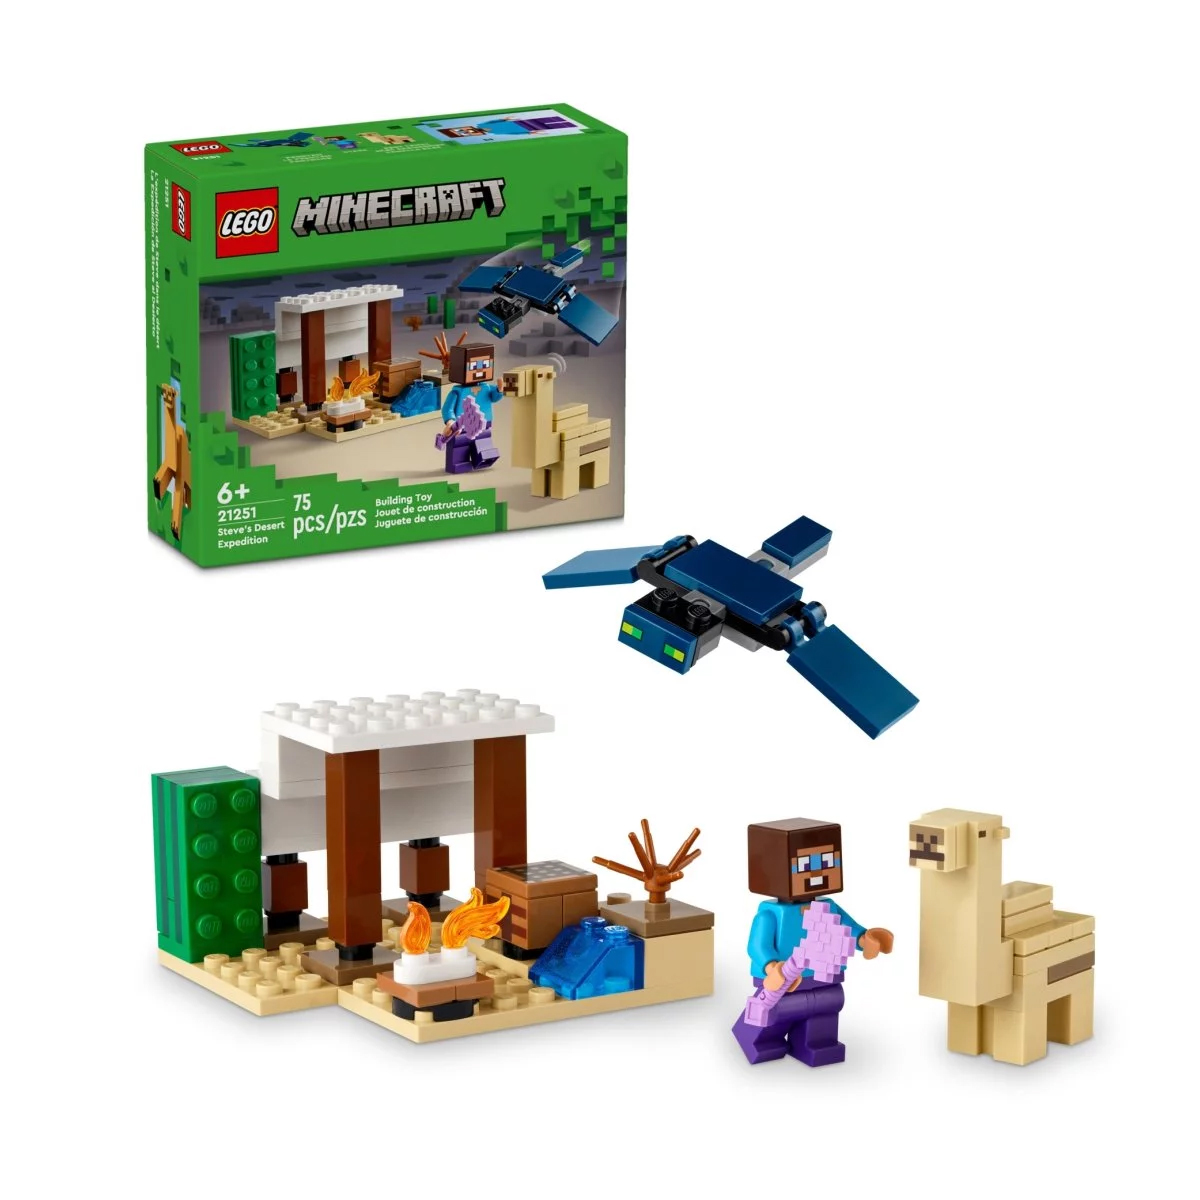 Конструктор Lego Minecraft Steve's Desert Expedition 21251, 75 деталей lego minecraft грибной домик игрушка для детей от 8 лет и старше